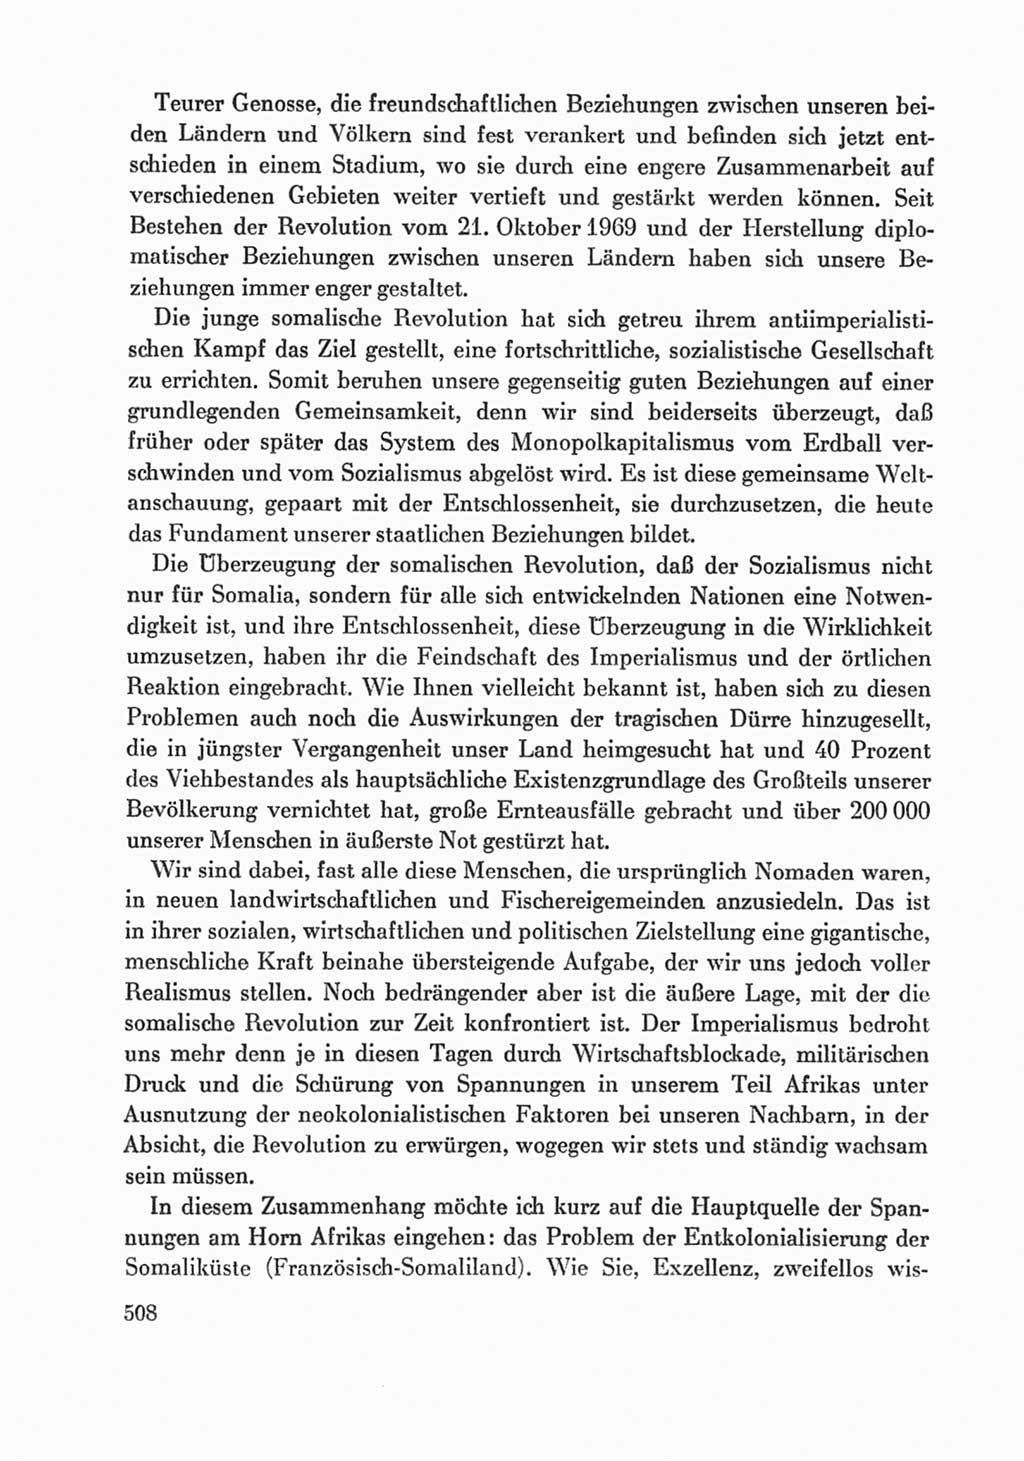 Protokoll der Verhandlungen des Ⅸ. Parteitages der Sozialistischen Einheitspartei Deutschlands (SED) [Deutsche Demokratische Republik (DDR)] 1976, Band 1, Seite 508 (Prot. Verh. Ⅸ. PT SED DDR 1976, Bd. 1, S. 508)